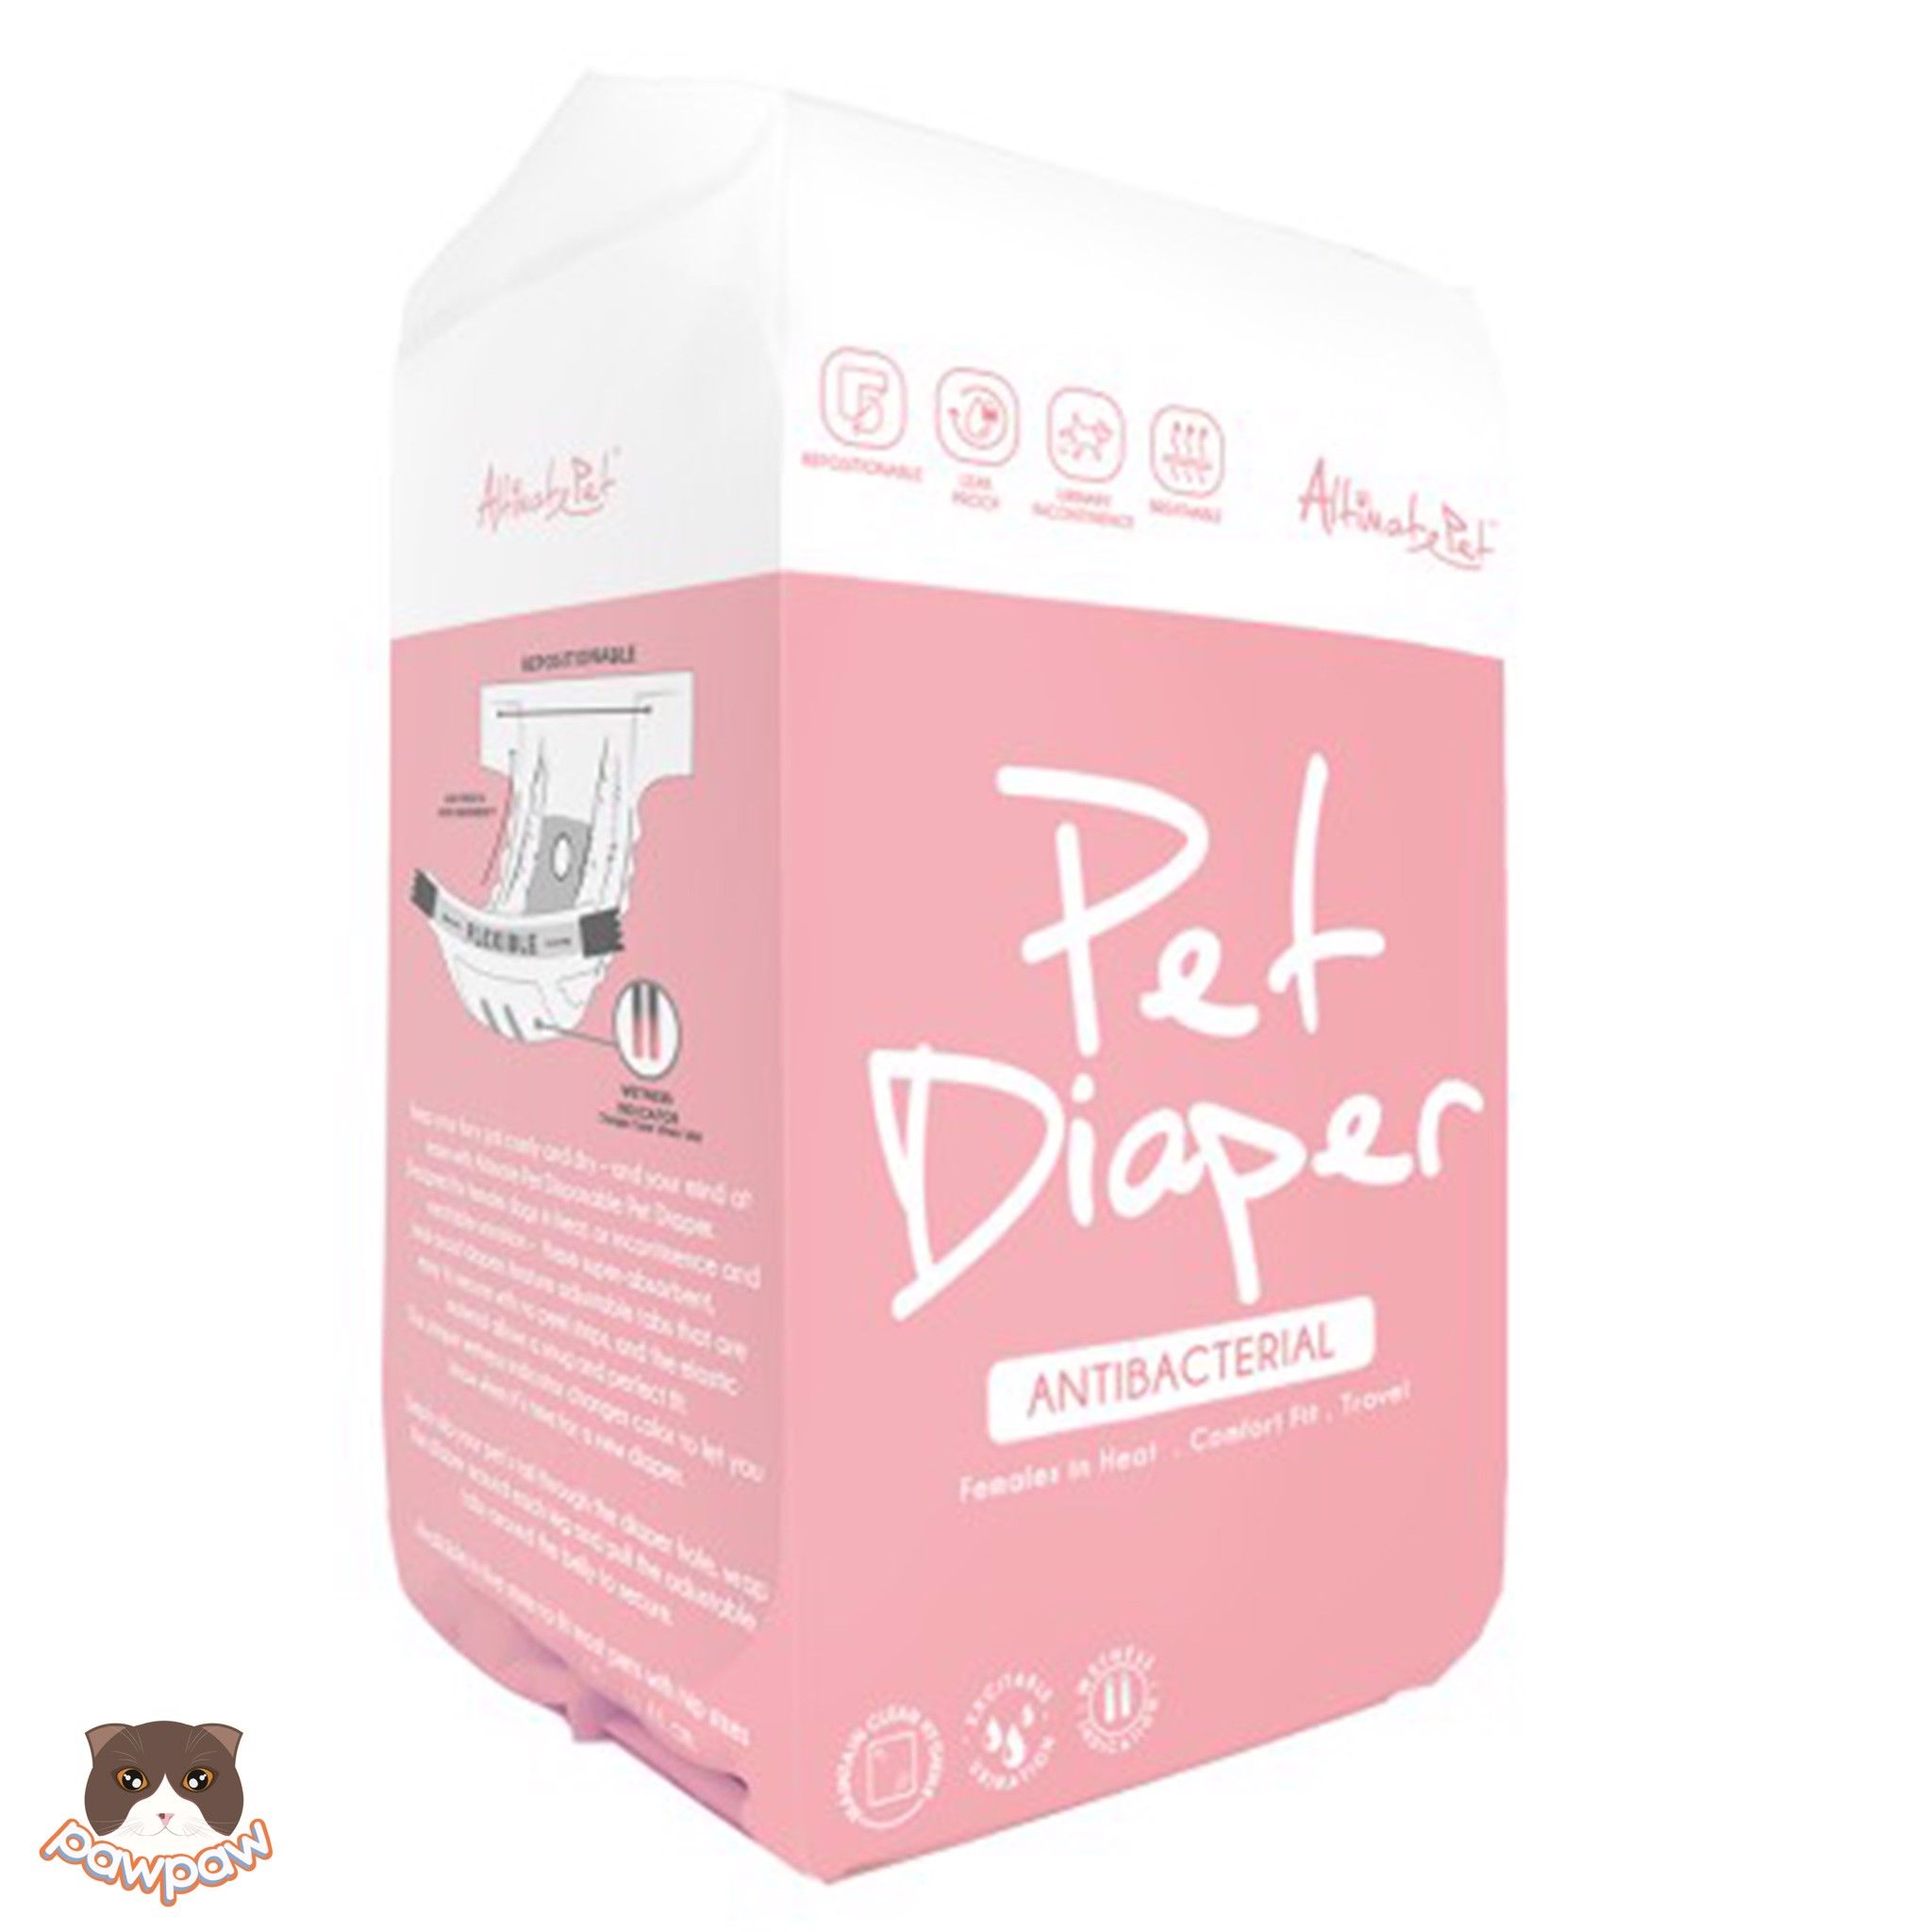  Tả quần - bỉm cho chó cái Altimate Pet Diapers 